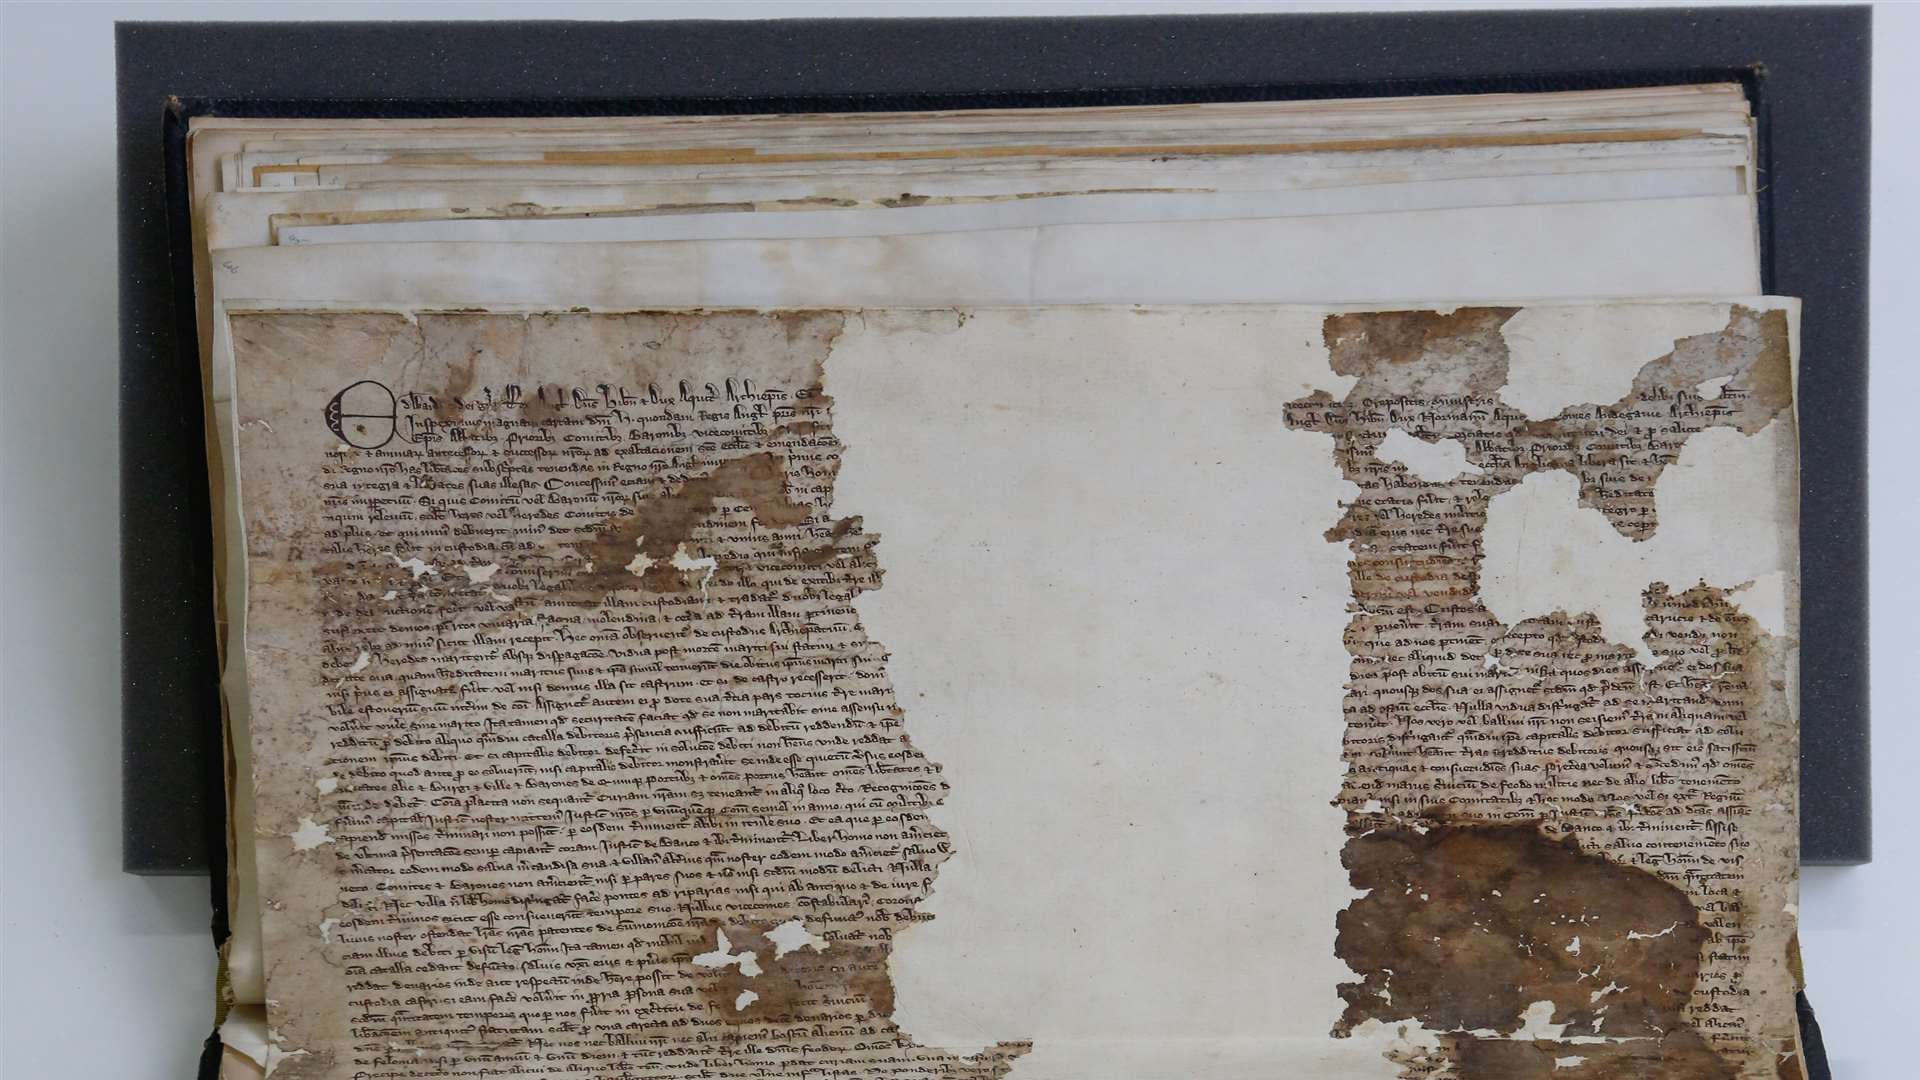 The Sandwich Magna Carta